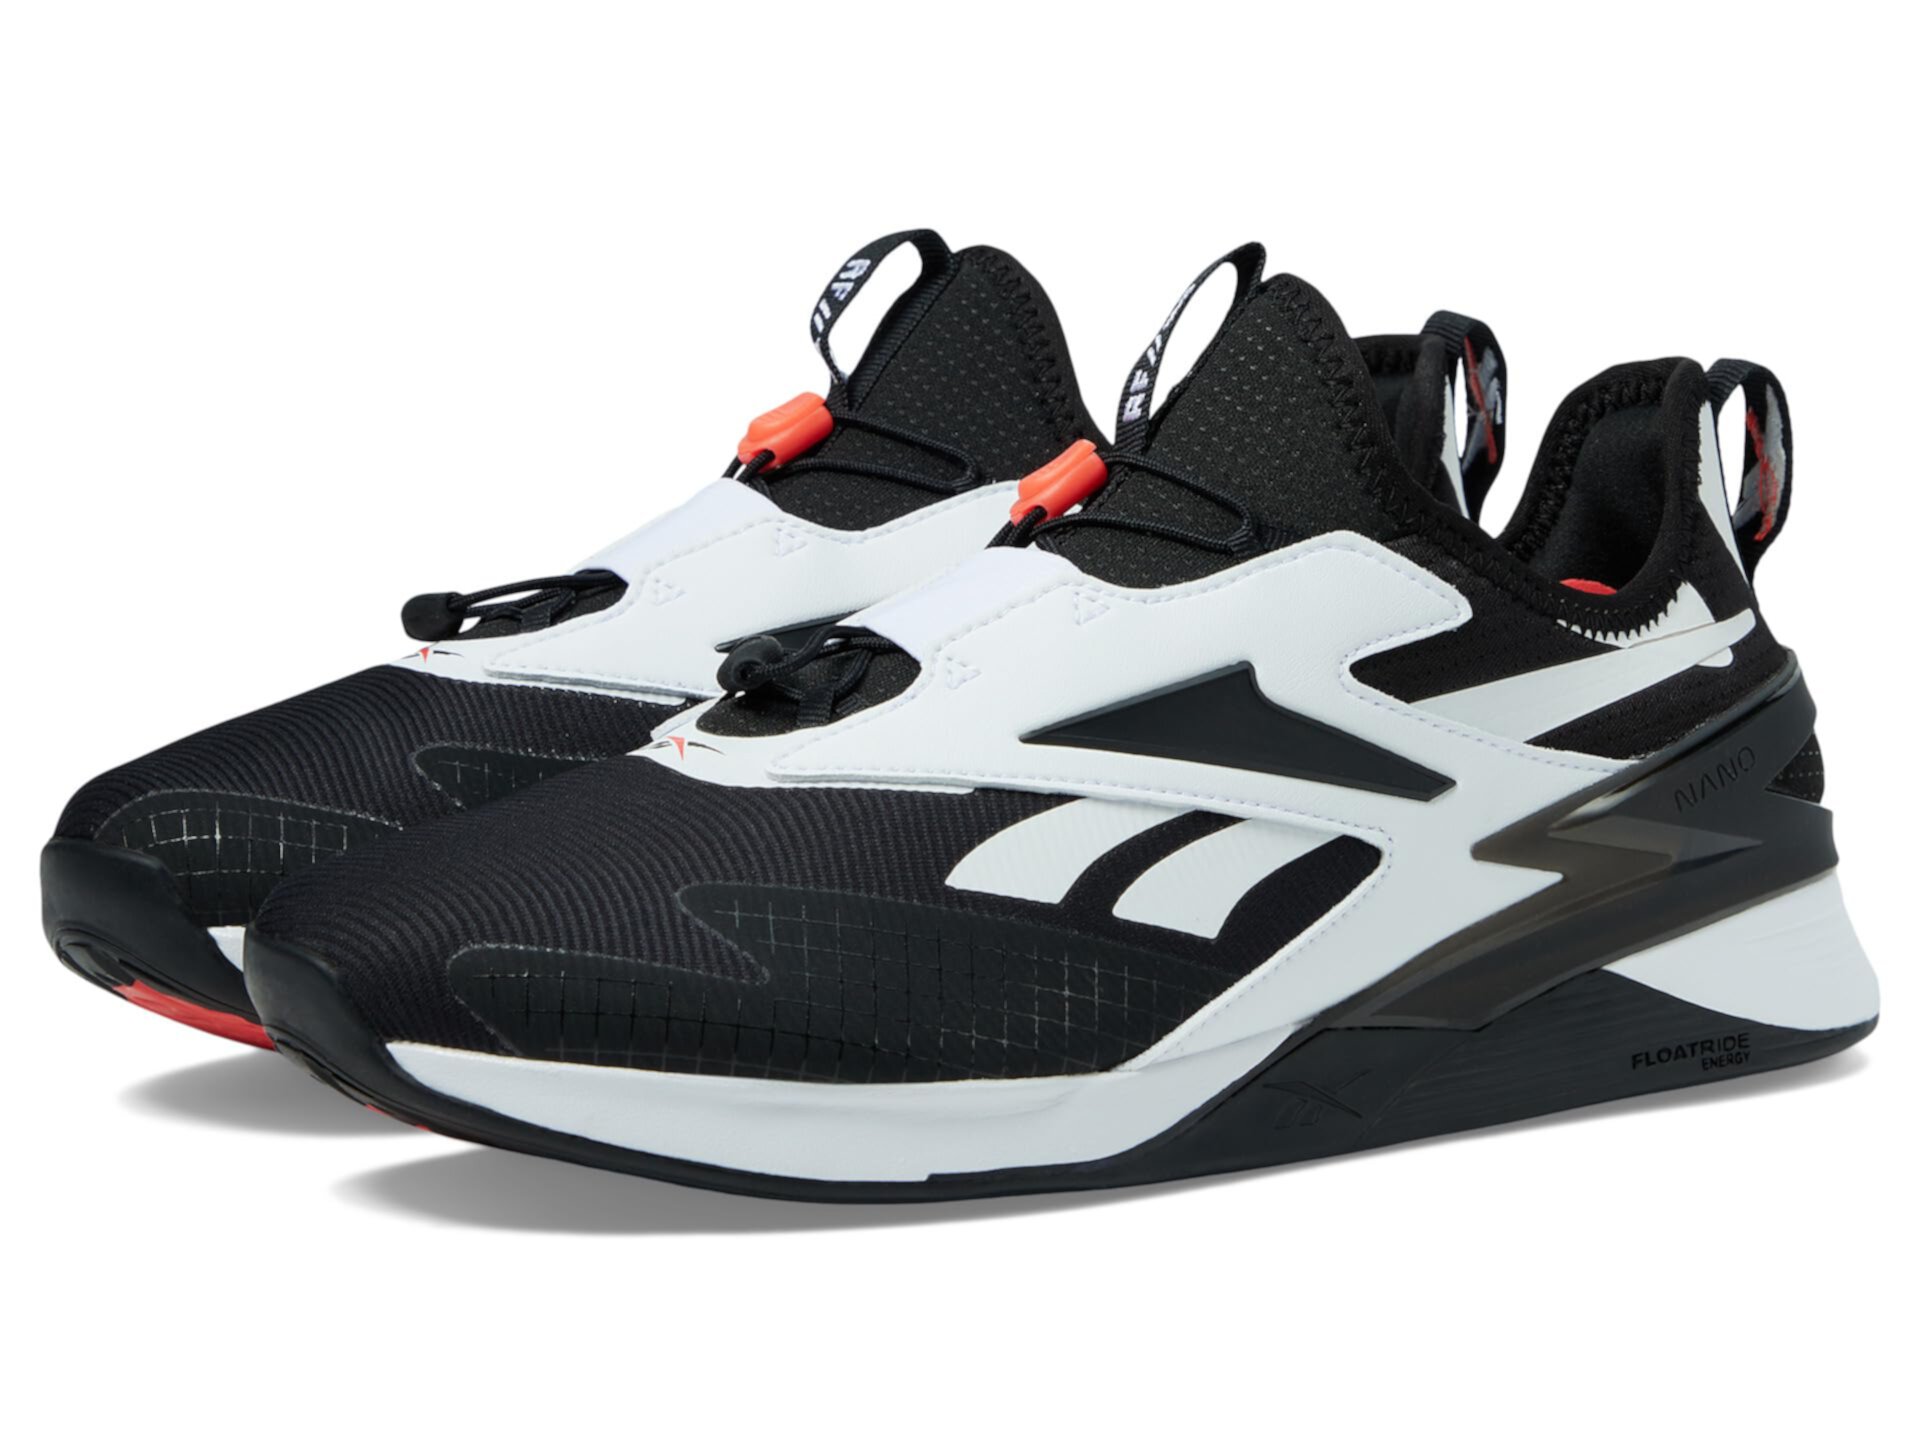 Активная обувь Reebok Nano X3 Froning с универсальным дизайном Reebok